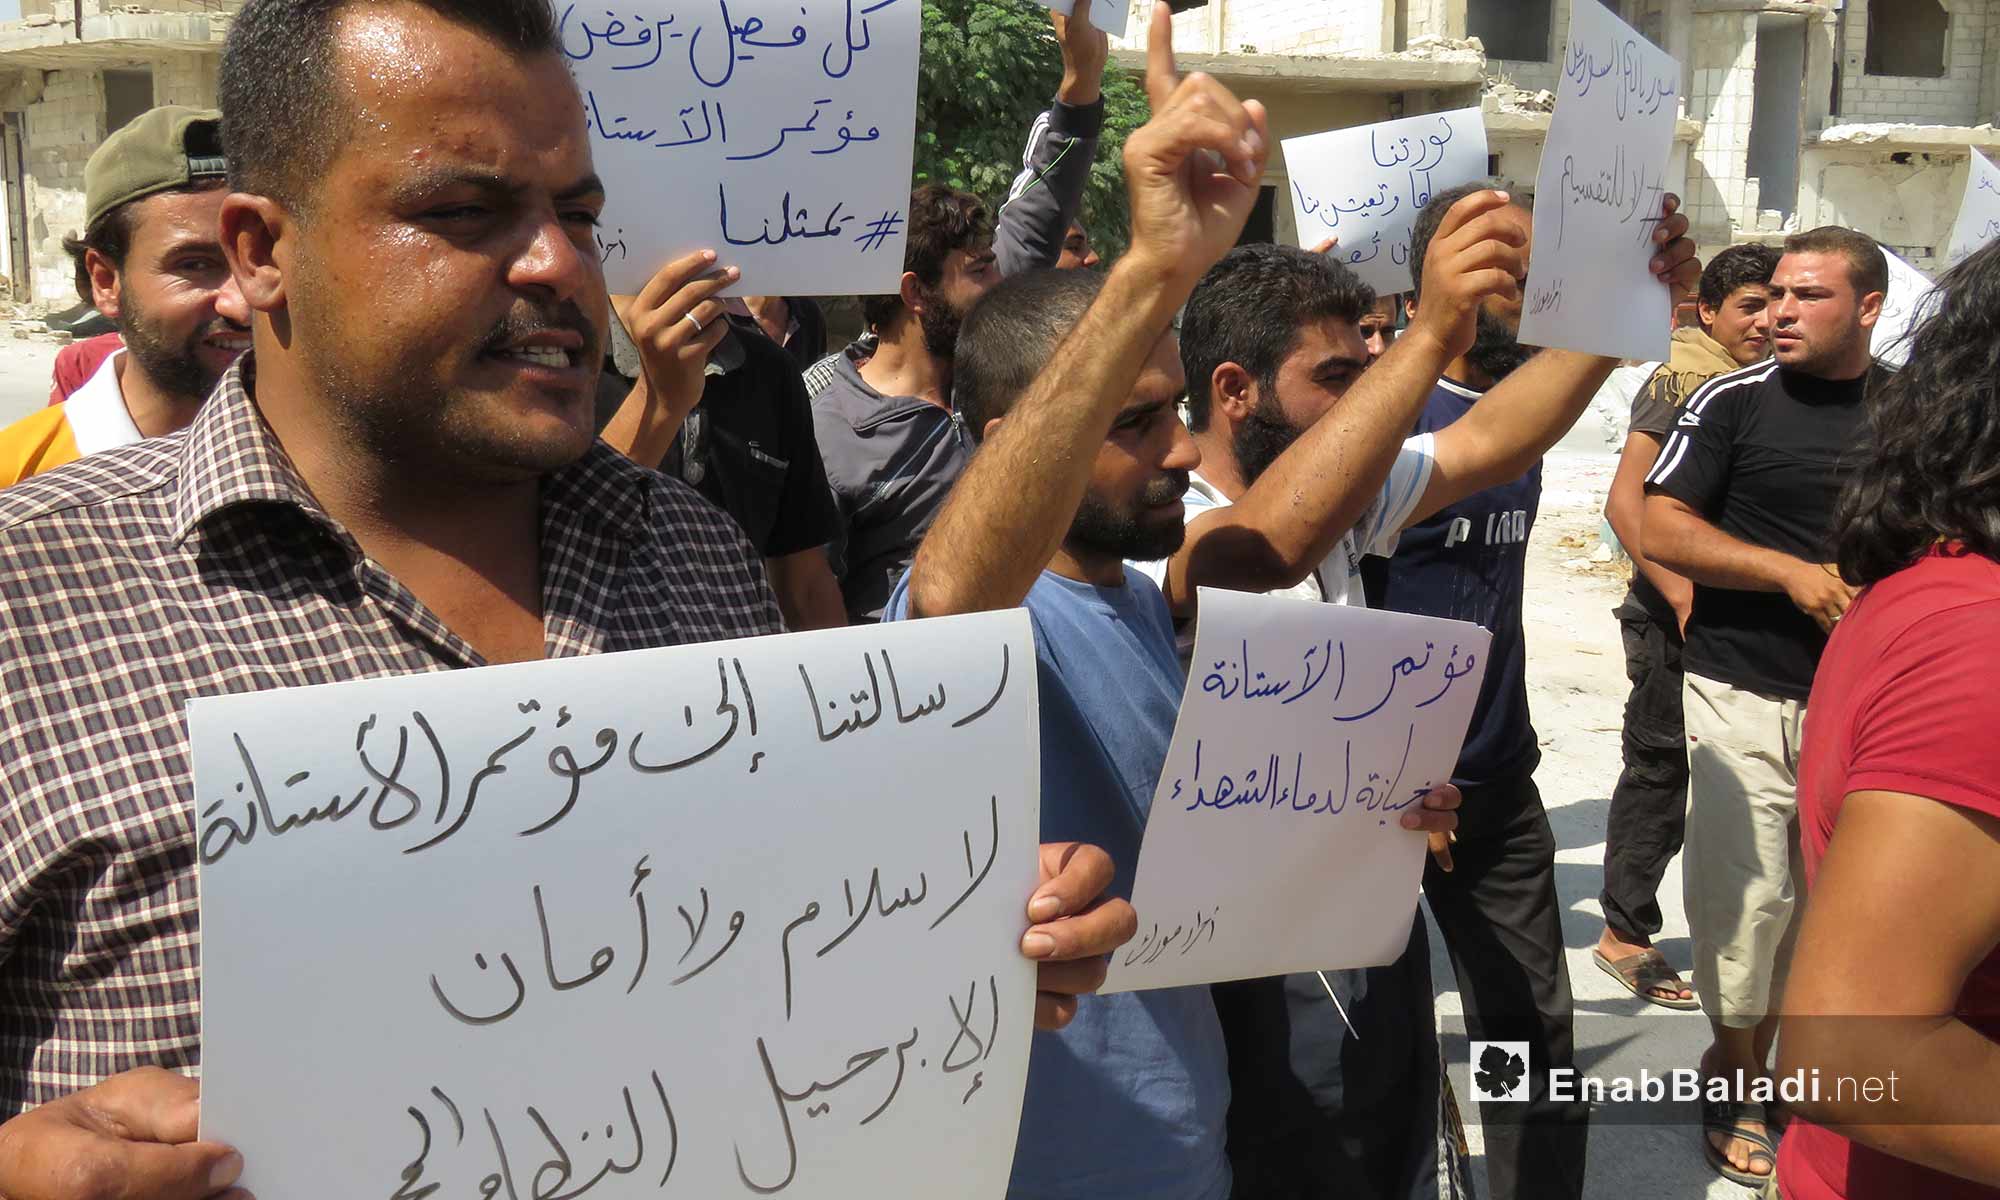 أهالي مورك في ريف حماة يتظاهرون رفضًا لقرارات أستانة المطالبة بإسقاط النظام السوري - 17 أيلول 2017 (عنب بلدي)